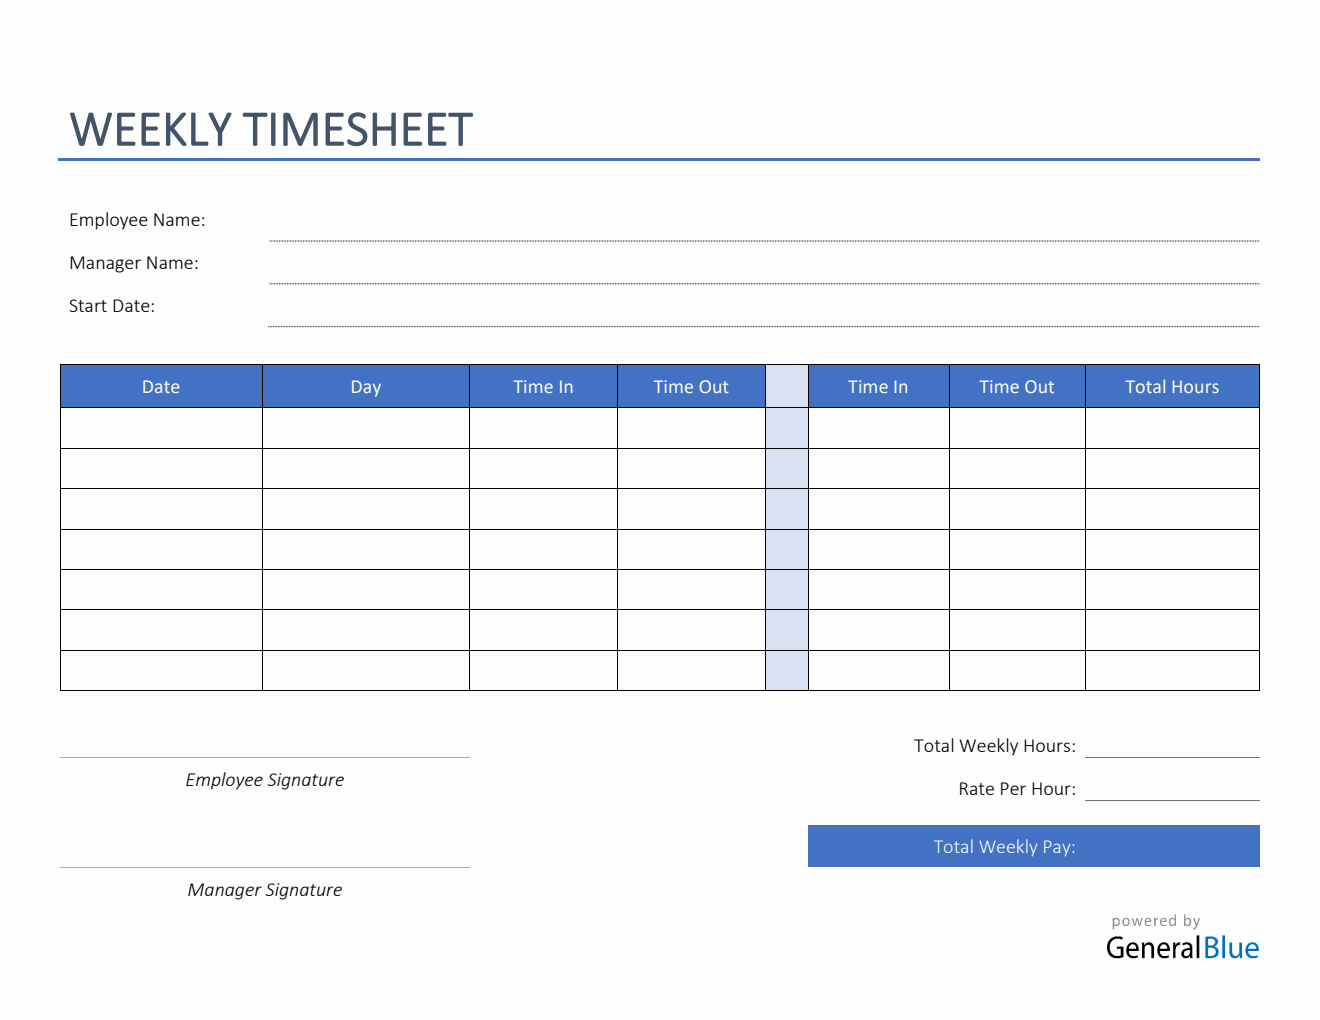 printable-weekly-timesheet-template-word-printable-world-holiday